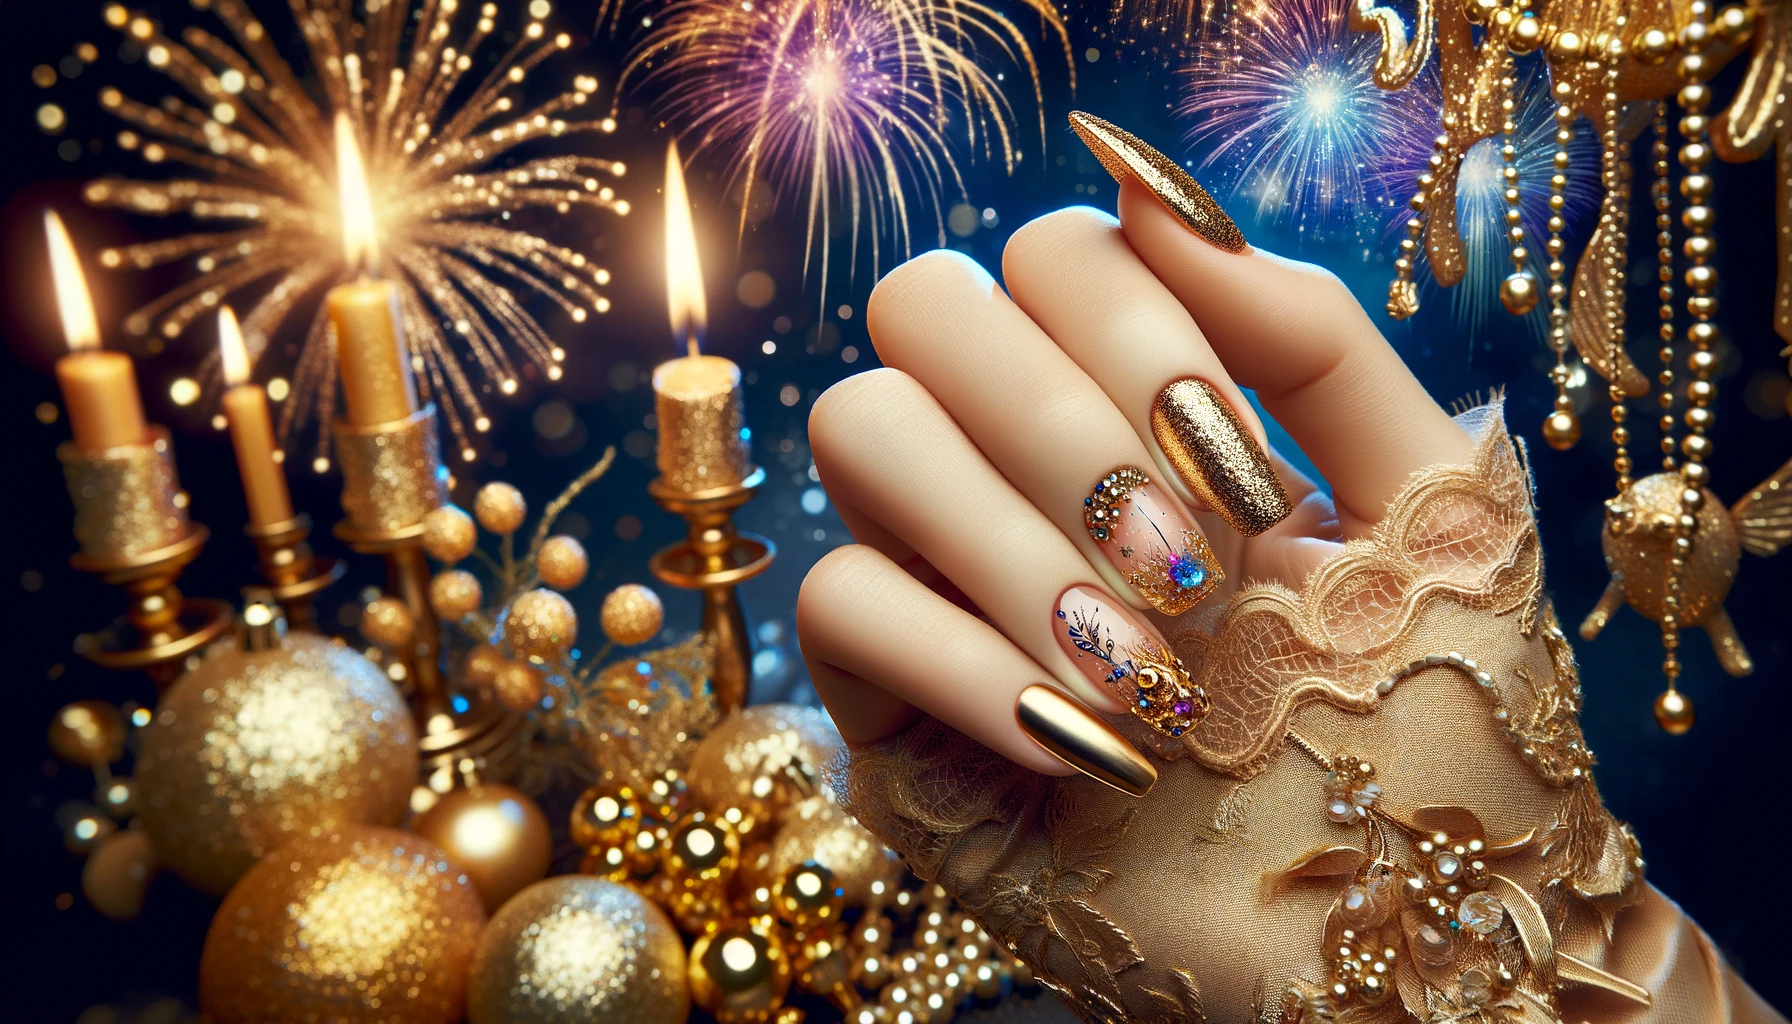 Sylwestrowe paznokcie w złotym kolorze z brokatem na tle bajkowej noworocznej sceny z migoczącymi światłami